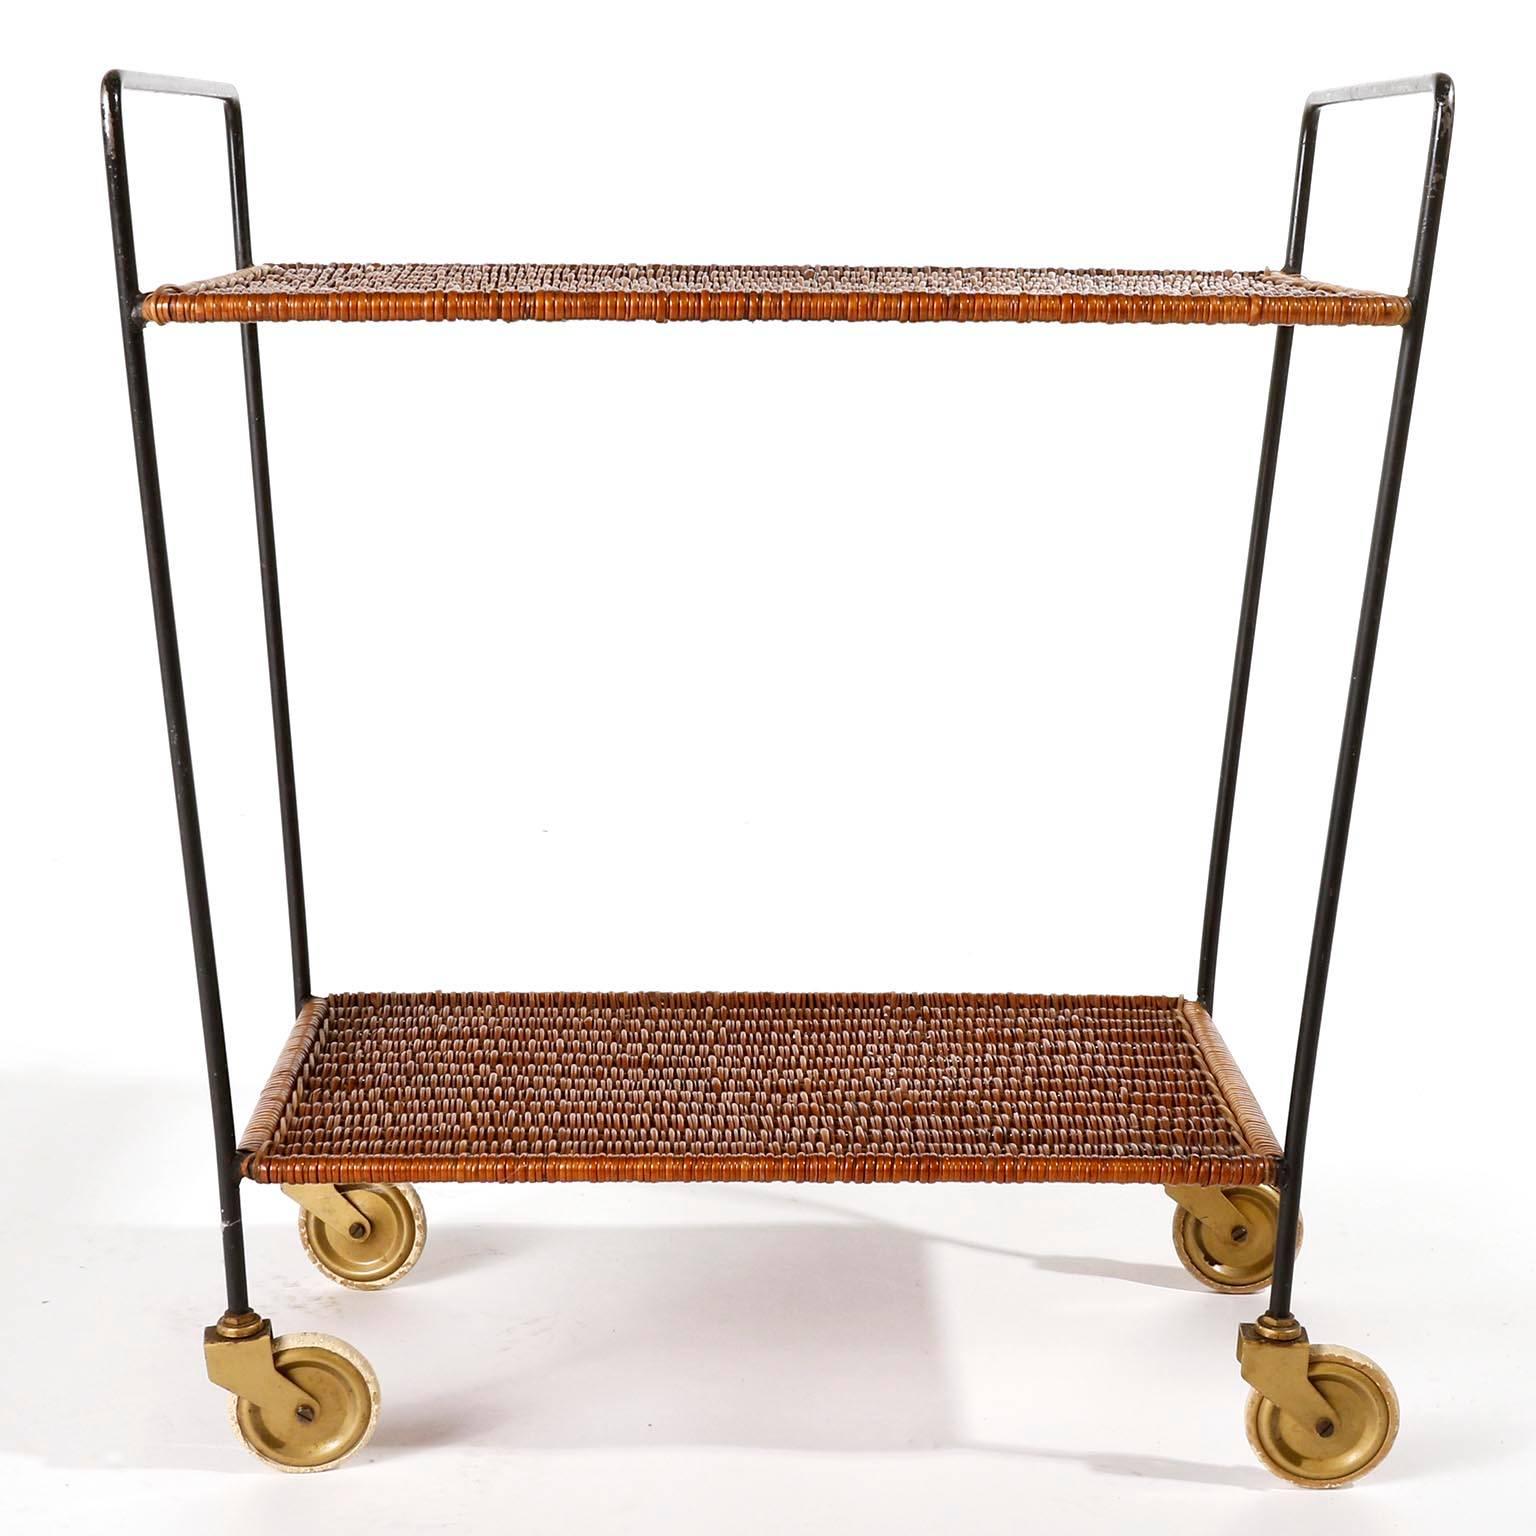 Ein schöner Trolley-Tisch oder Teewagen aus einem schwarz lackierten Metallrahmen mit Weidenregalen, hergestellt in der Mitte des Jahrhunderts in Österreich, um 1950.
Das Geflecht ist in ausgezeichnetem Zustand. Gebrauchsspuren am Metall,